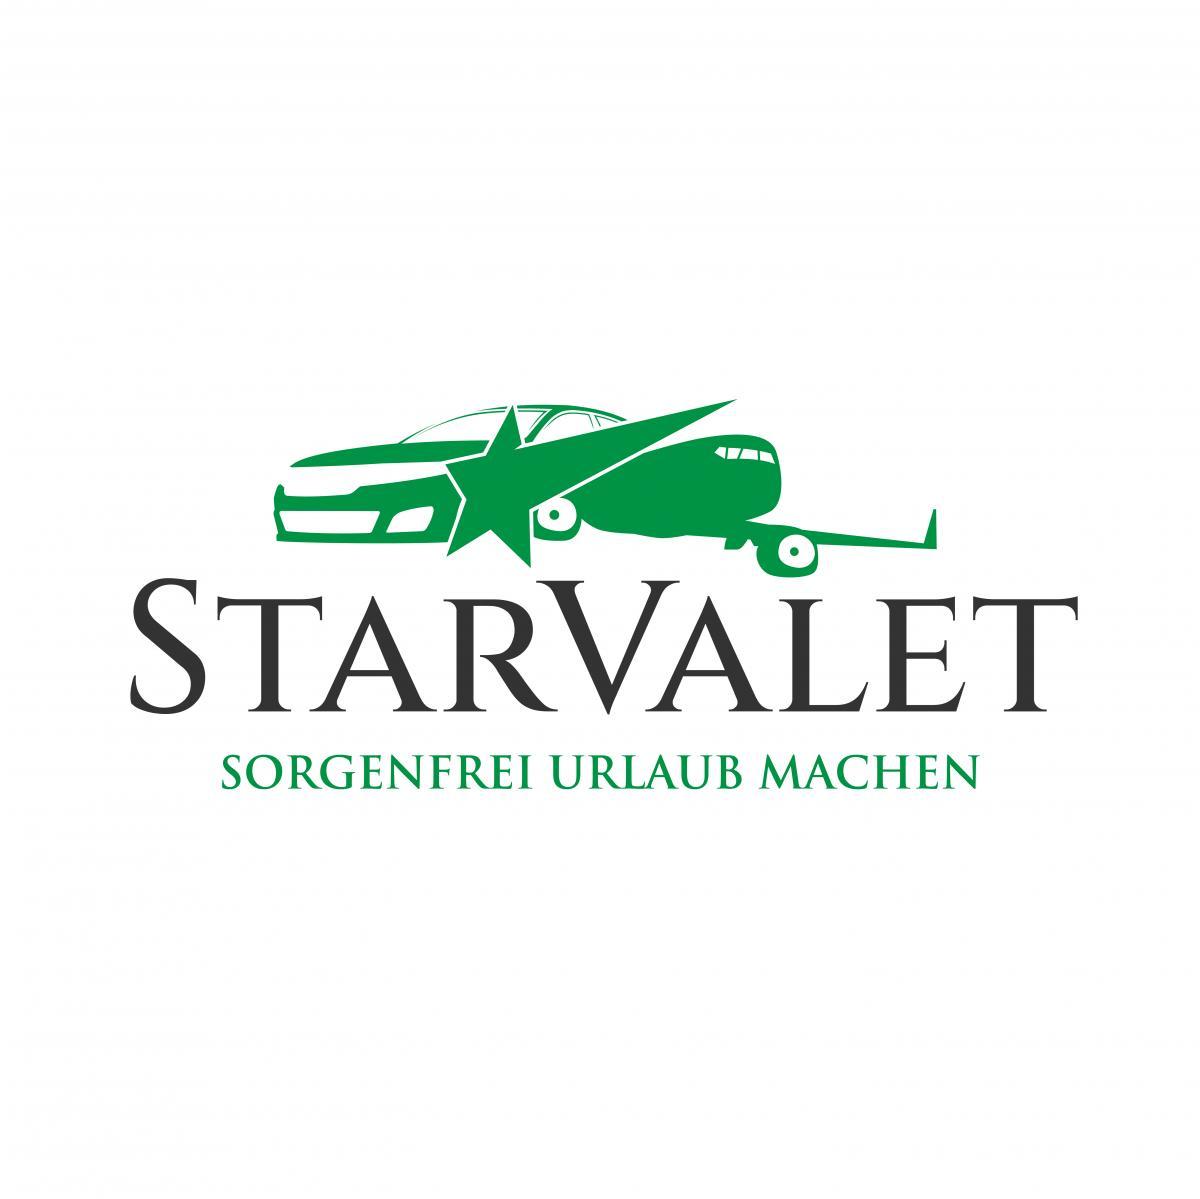 Valet-Parking Star Valet 